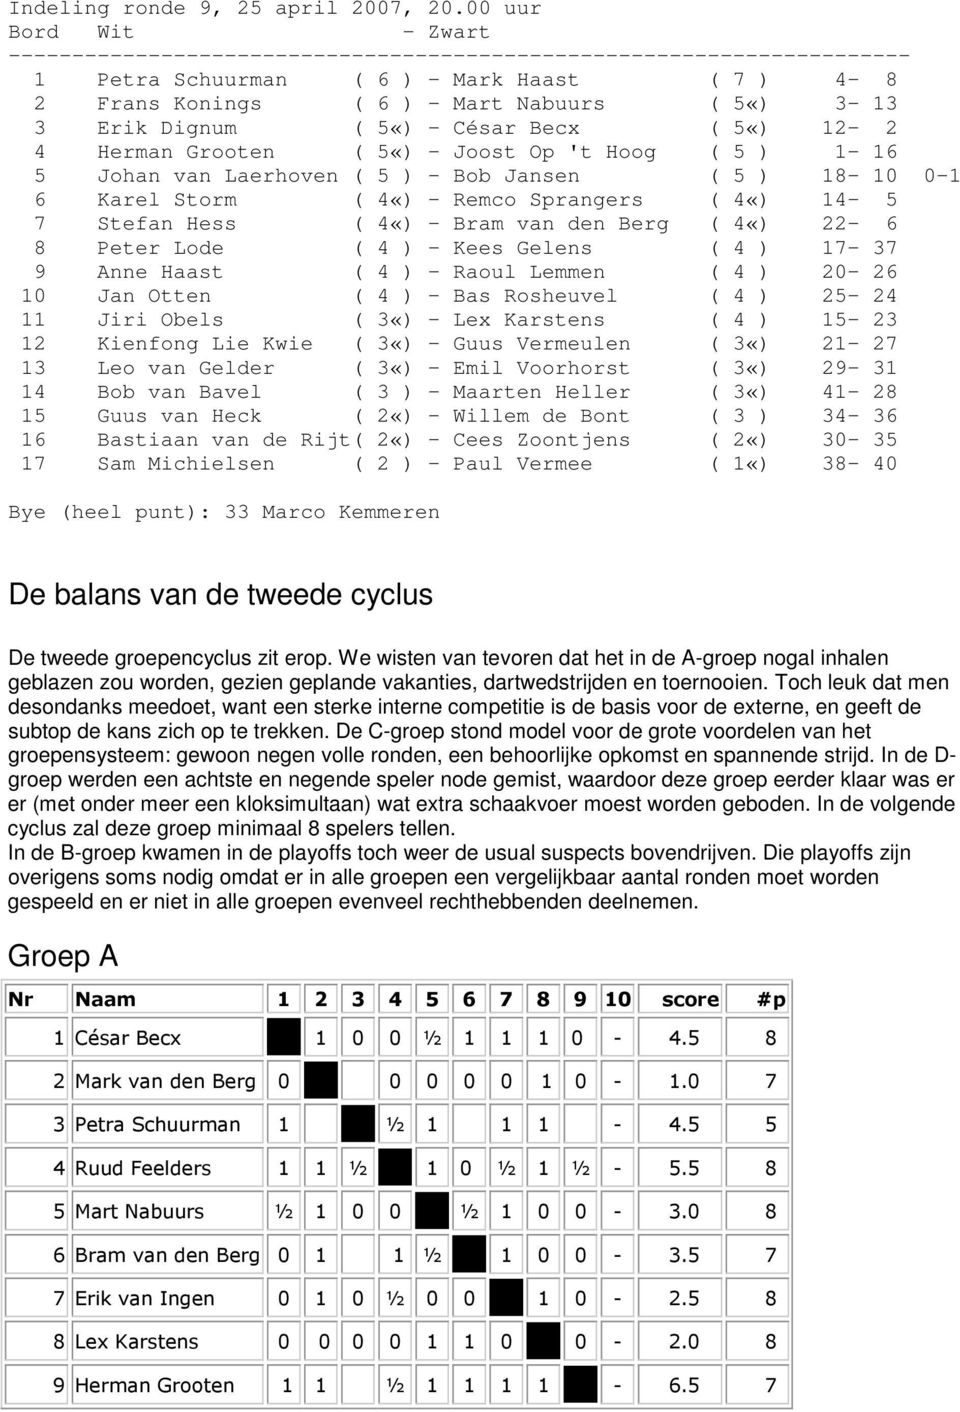 Dignum ( 5«) - César Becx ( 5«) 12-2 4 Herman Grooten ( 5«) - Joost Op 't Hoog ( 5 ) 1-16 5 Johan van Laerhoven ( 5 ) - Bob Jansen ( 5 ) 18-10 0-1 6 Karel Storm ( 4«) - Remco Sprangers ( 4«) 14-5 7